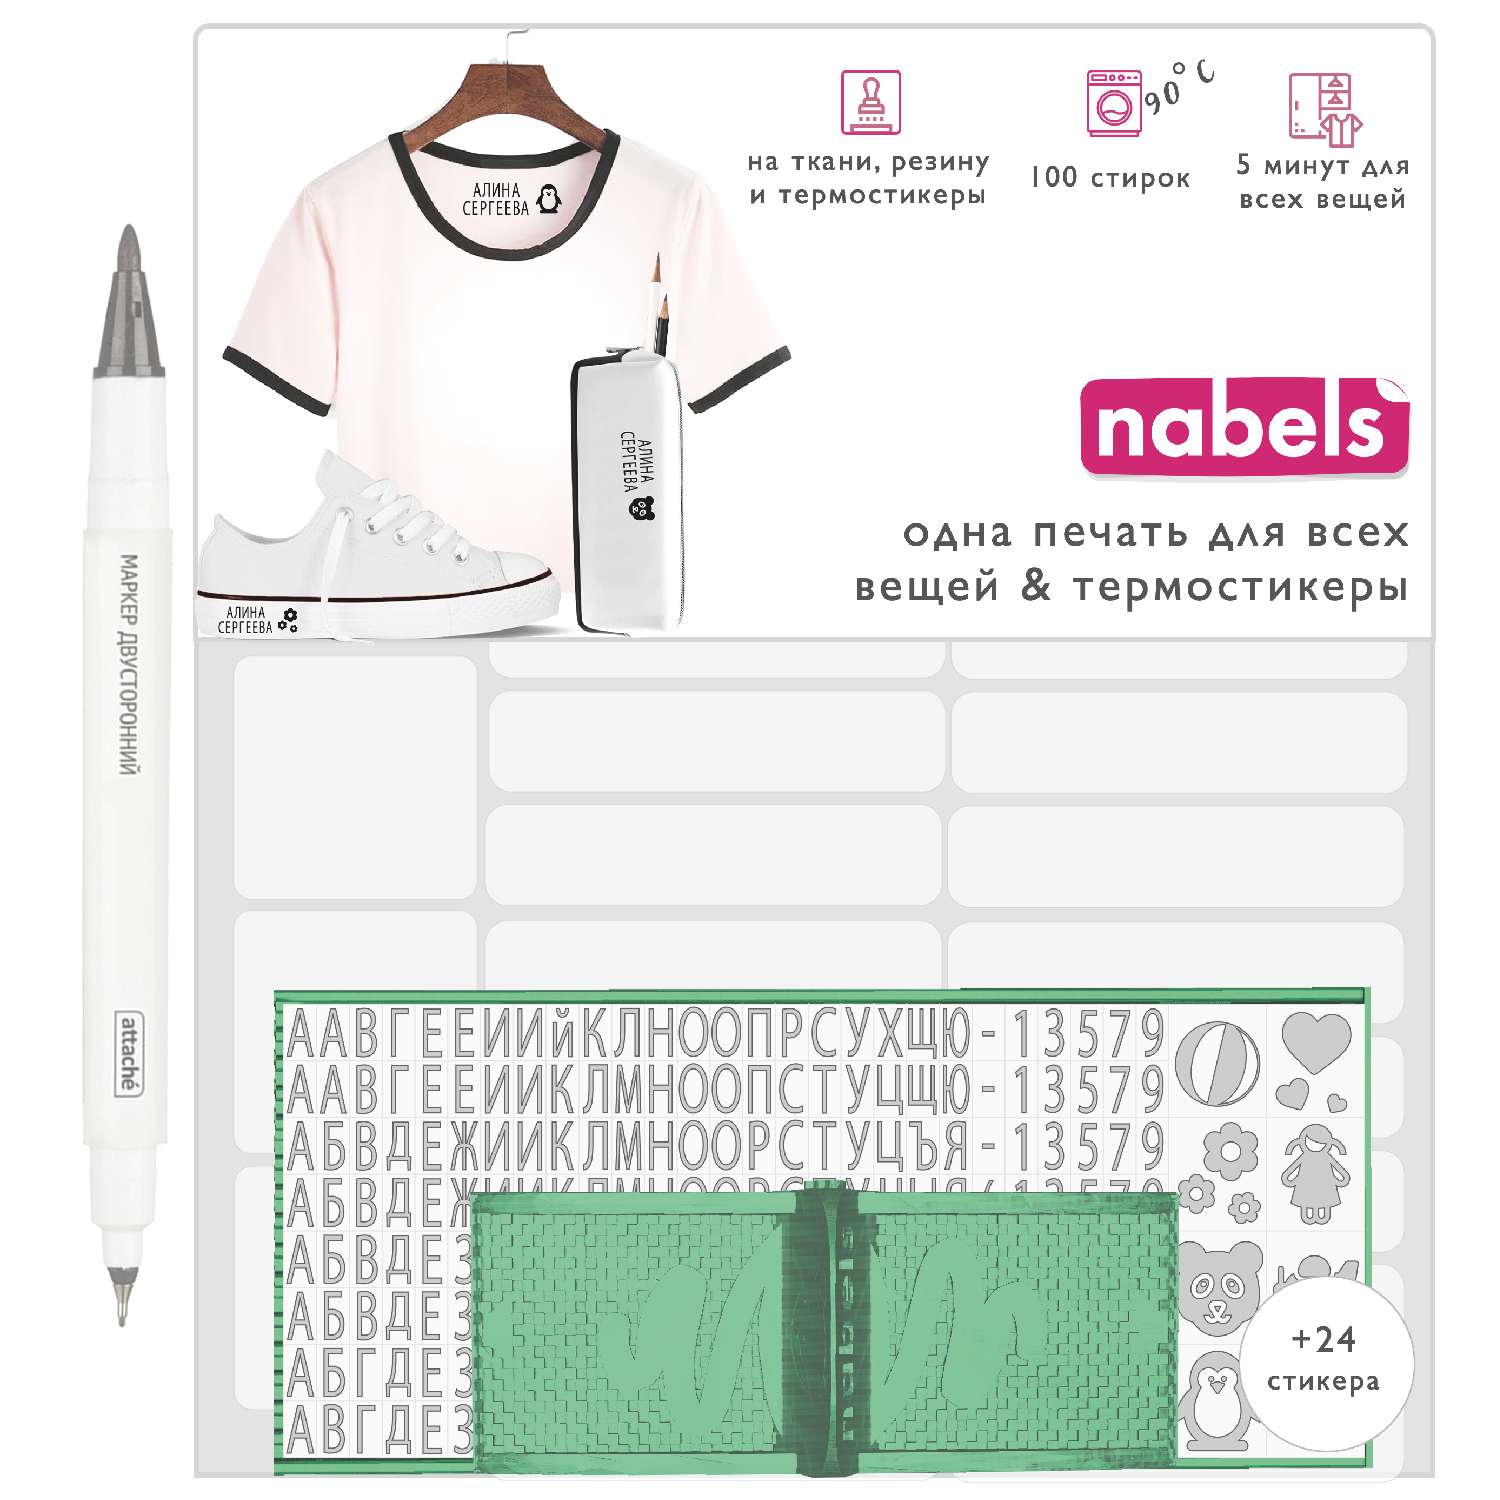 Набор Nabels для самонаборной печати и именные стикеры - термобирки Белый - фото 1